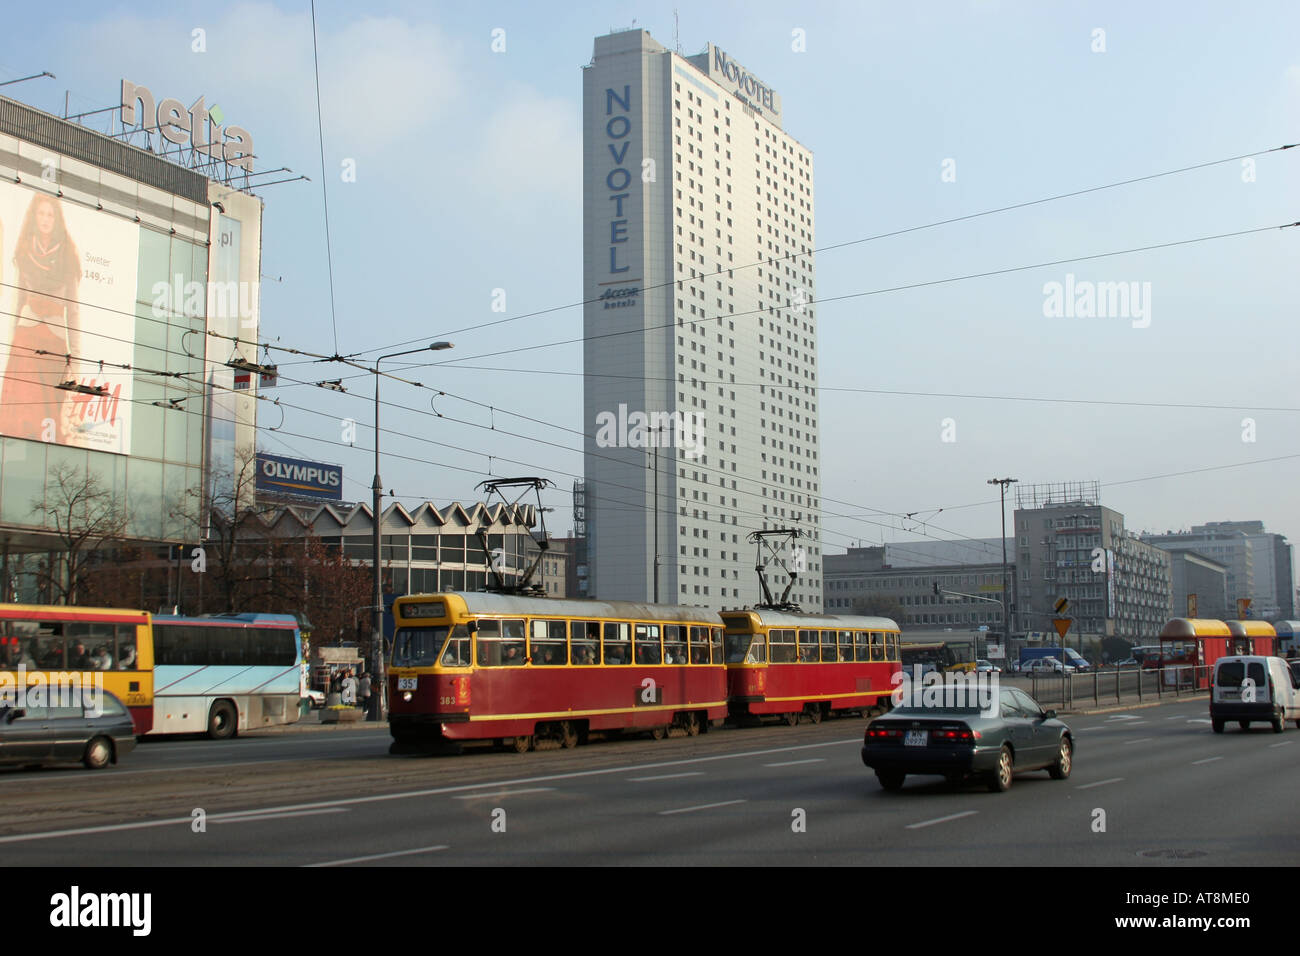 Straßenbahn vor der Novotel Hotel in Warschau Polen Stockfoto